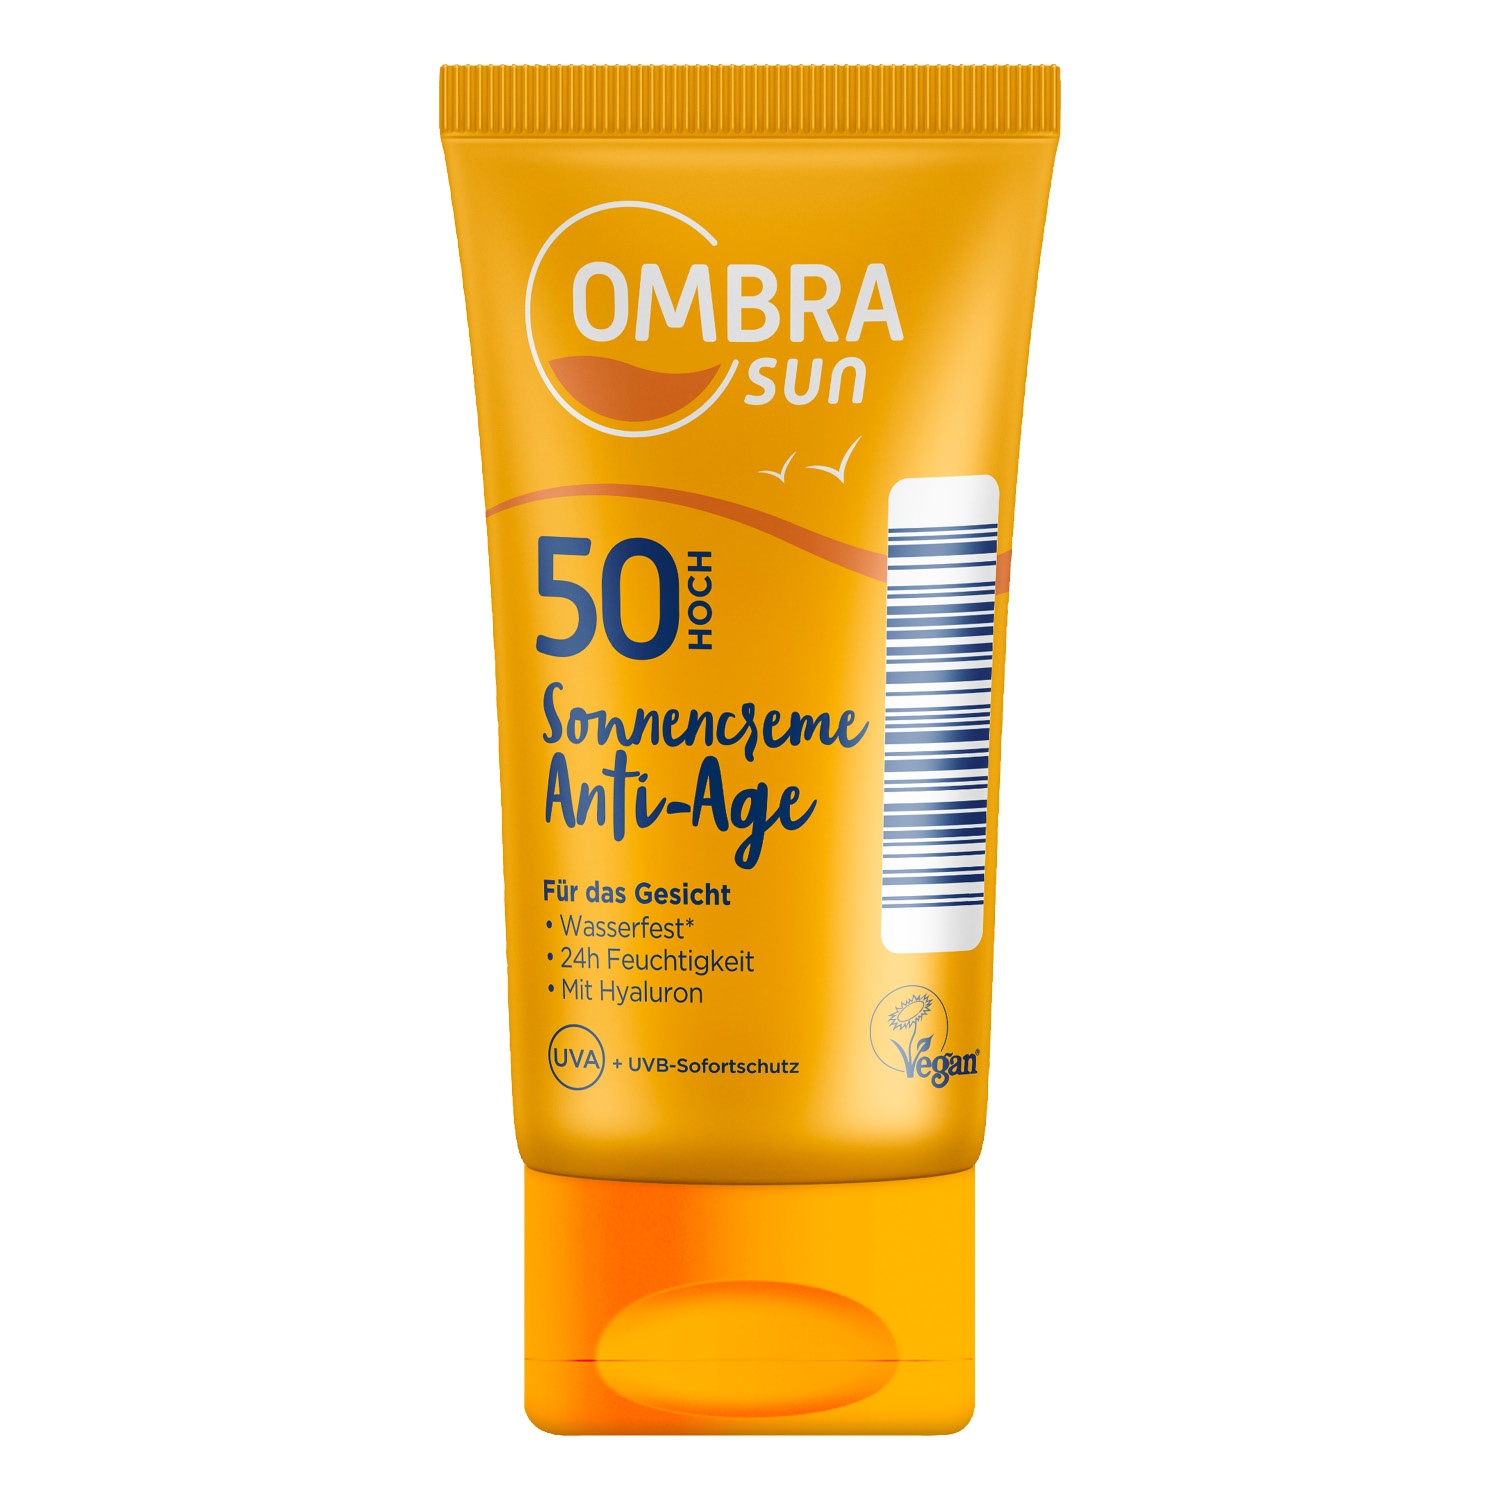 OMBRA sun Sonnencreme Anti-Age LSF 50 50 ml